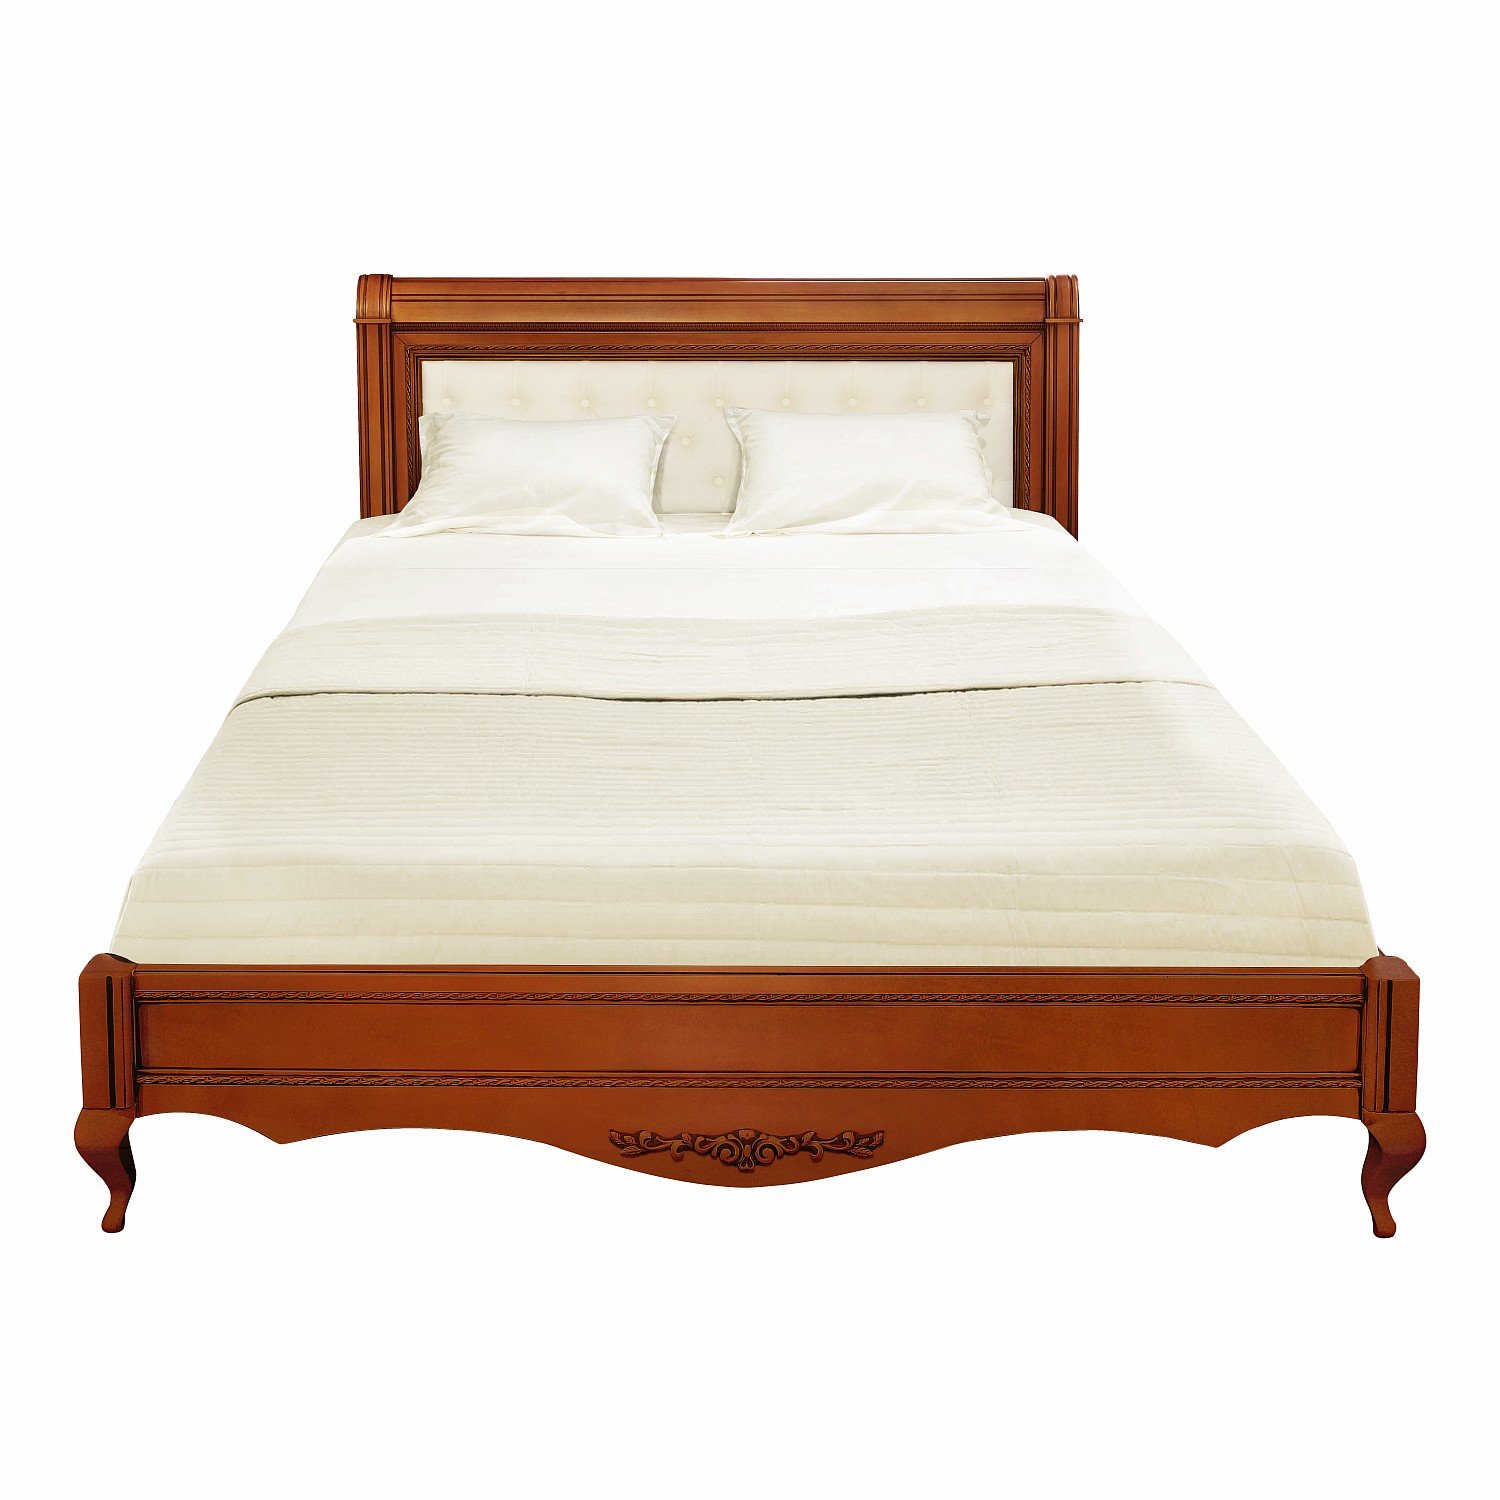 Кровать Timber Неаполь, двуспальная с мягким изголовьем 180x200 см цвет: янтарь (T-528)T-528